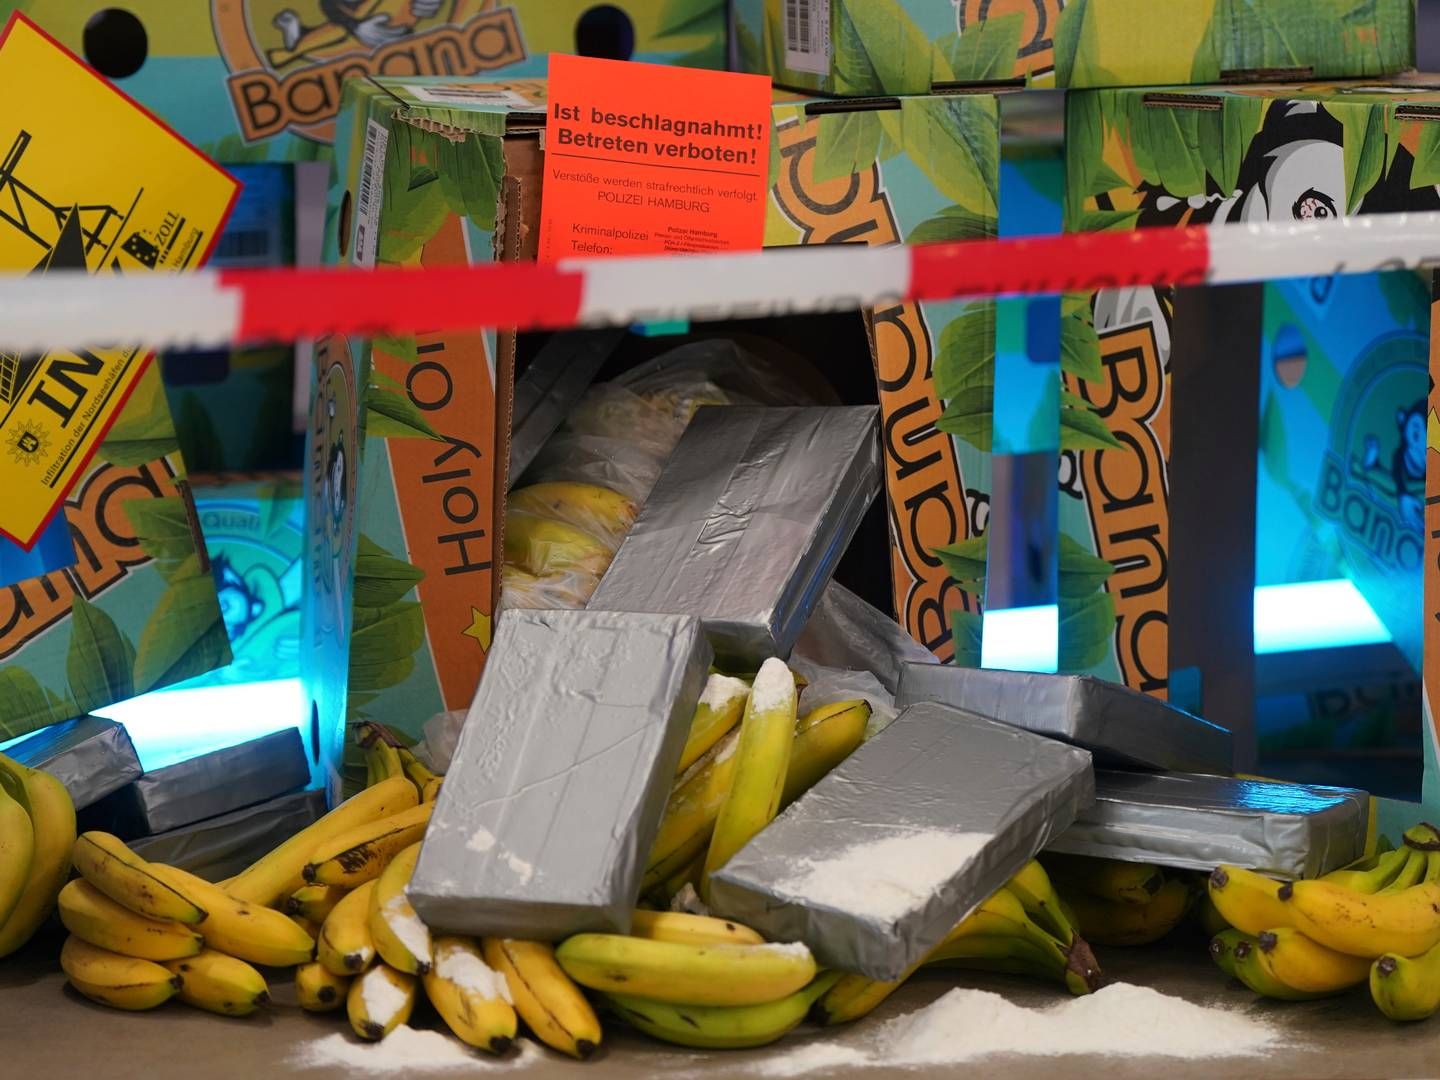 Anonyme grå pakker blandt bananer - foto fra en kampagne for at skabe opmærksomhed om narkosmugling blandt tyske havnearbejdere. | Foto: Marcus Brandt/AP/Ritzau Scanpix